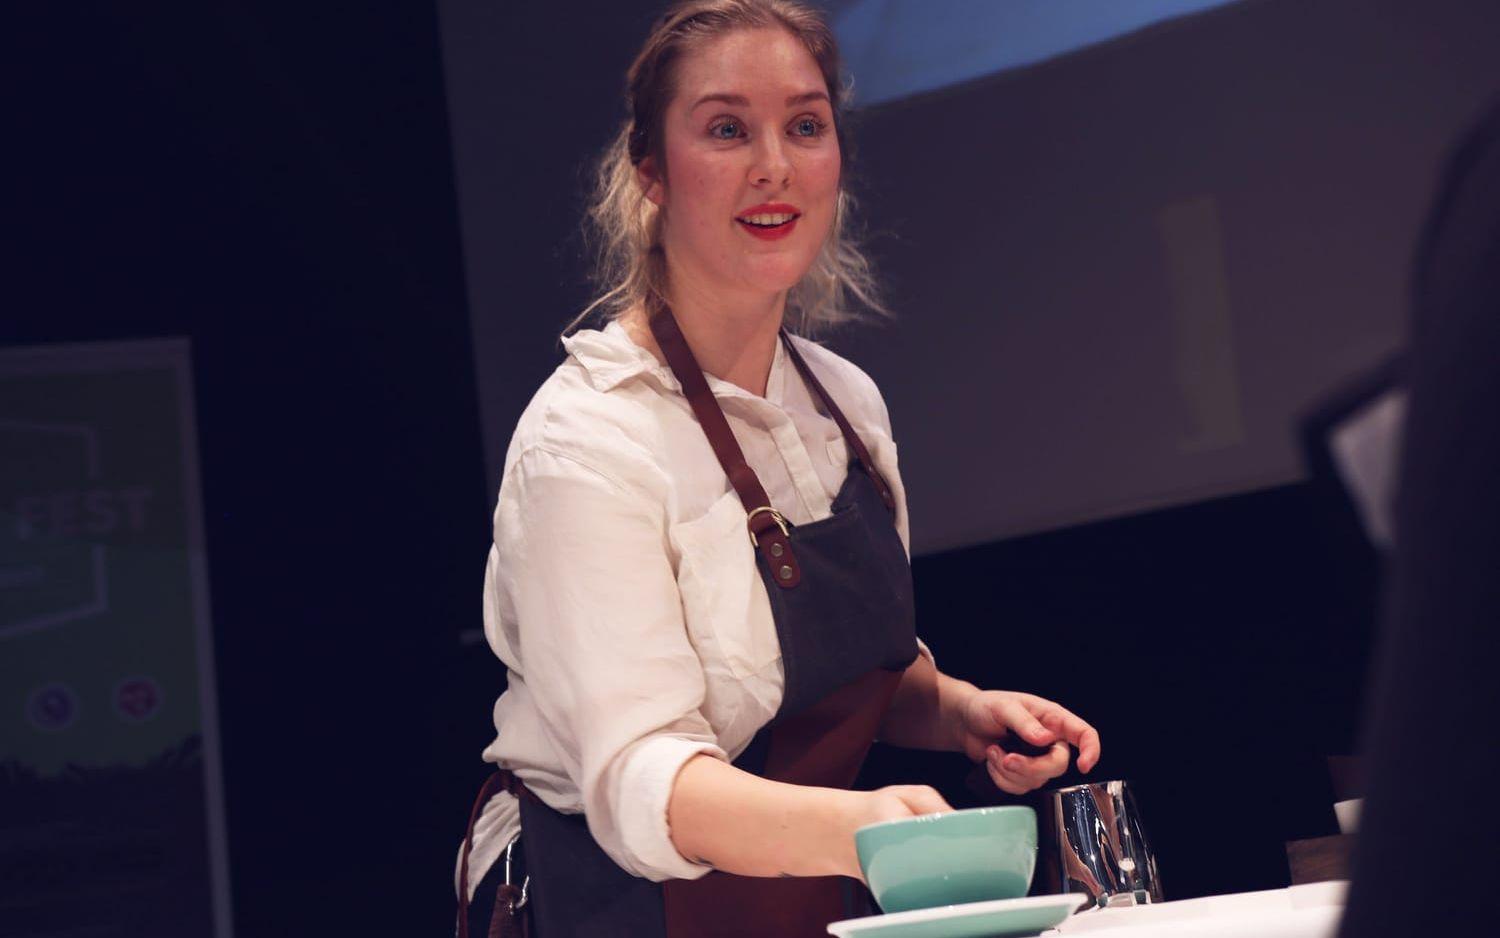 Clara Drake Pihlgren vann för tredje året i rad i kategorin "Latte Art Championship" som går ut på att göra "konst" med mjölken. Foto: Liv Omsén.